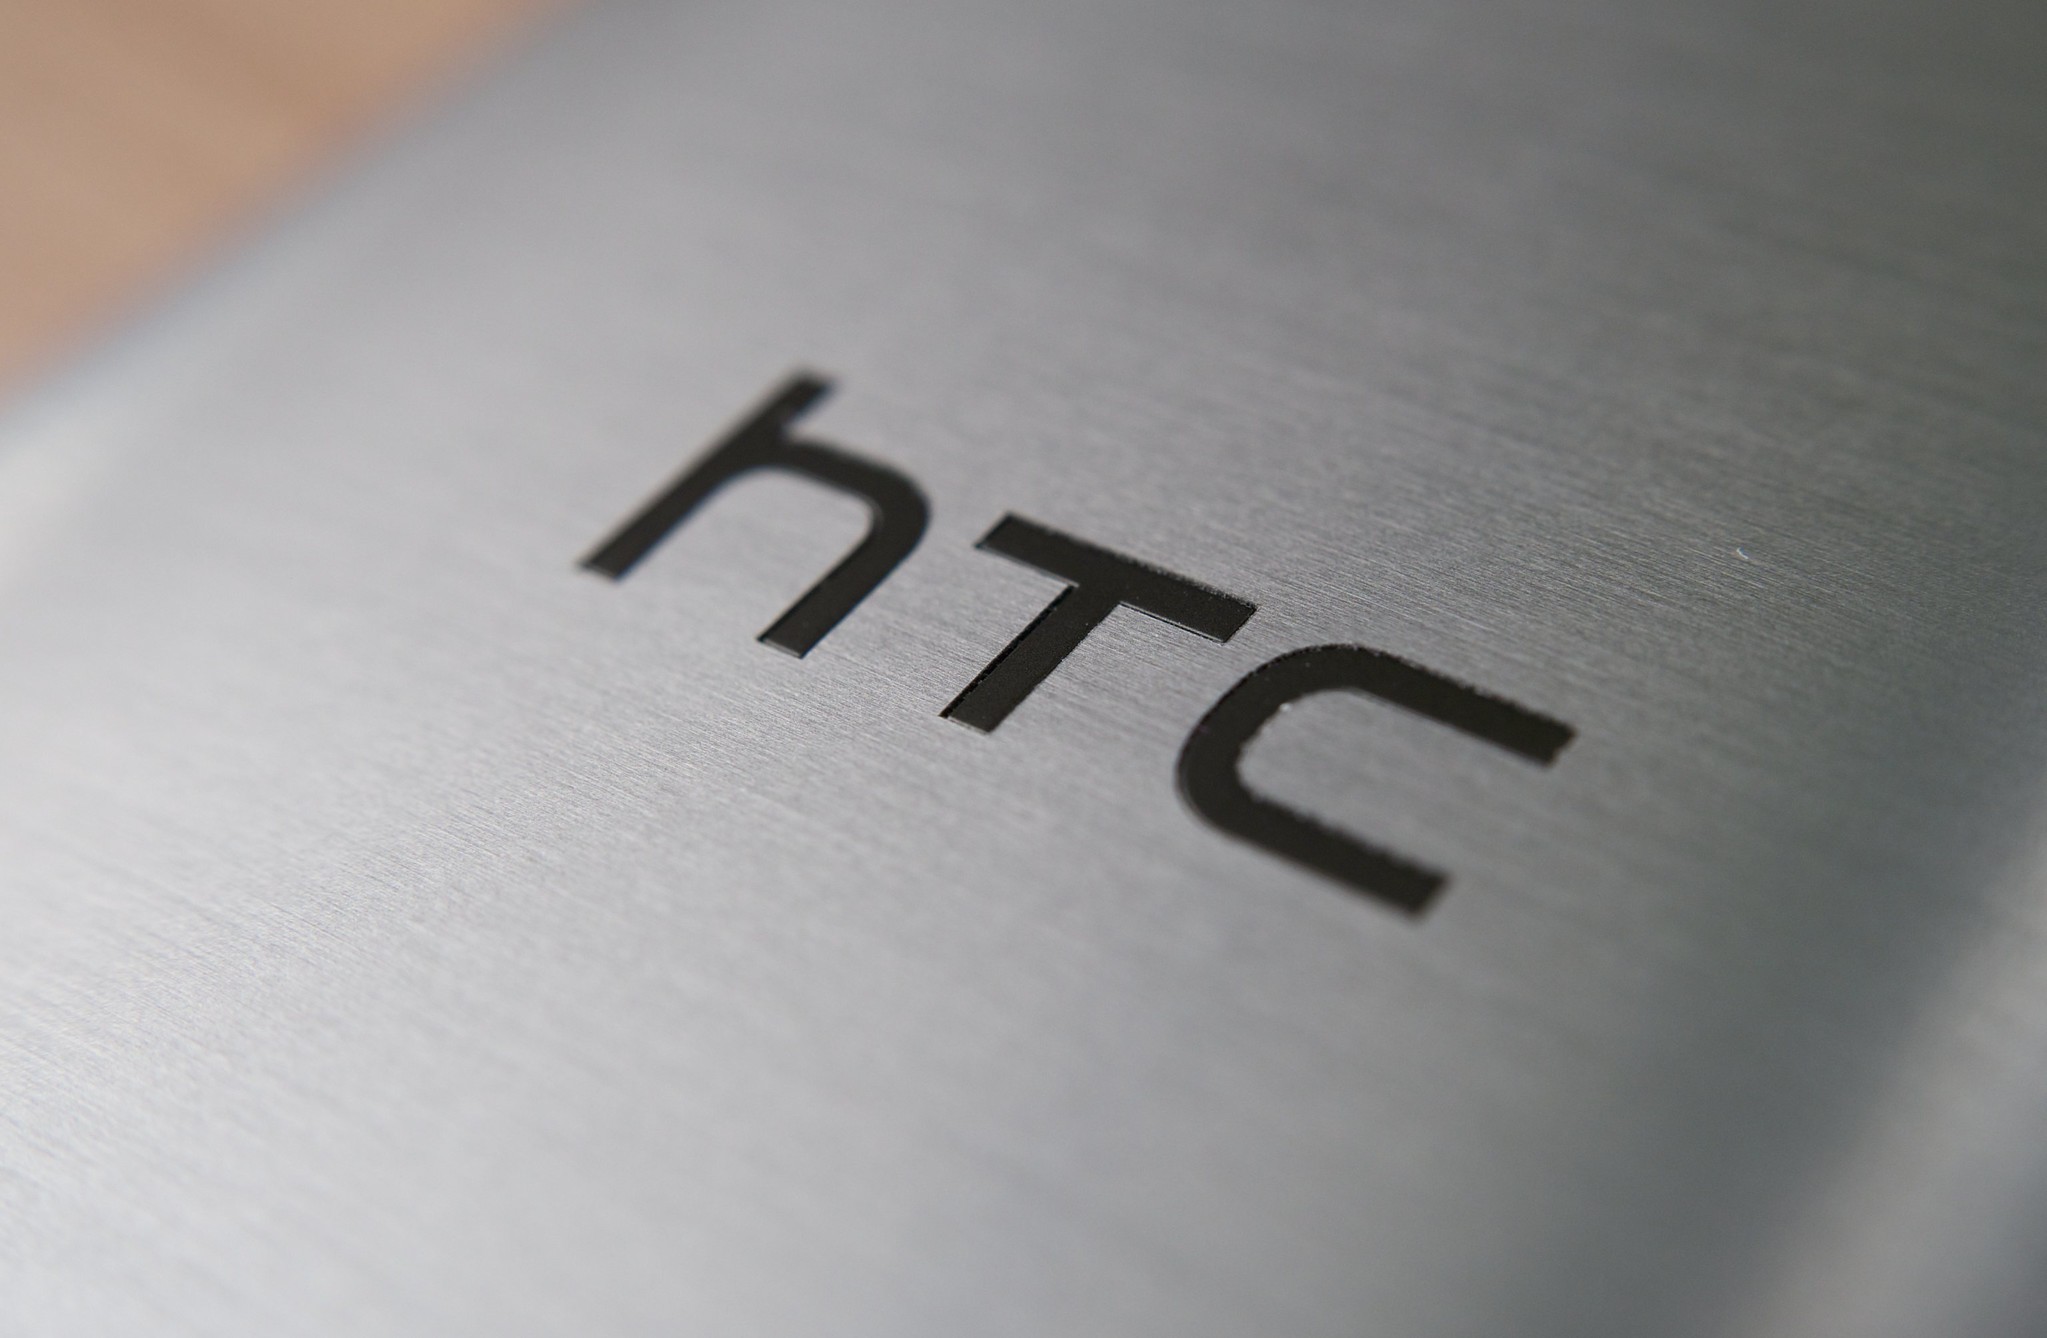 סקירה של הטלפון החכם HTC Wildfire R70 עם מאפיינים עיקריים